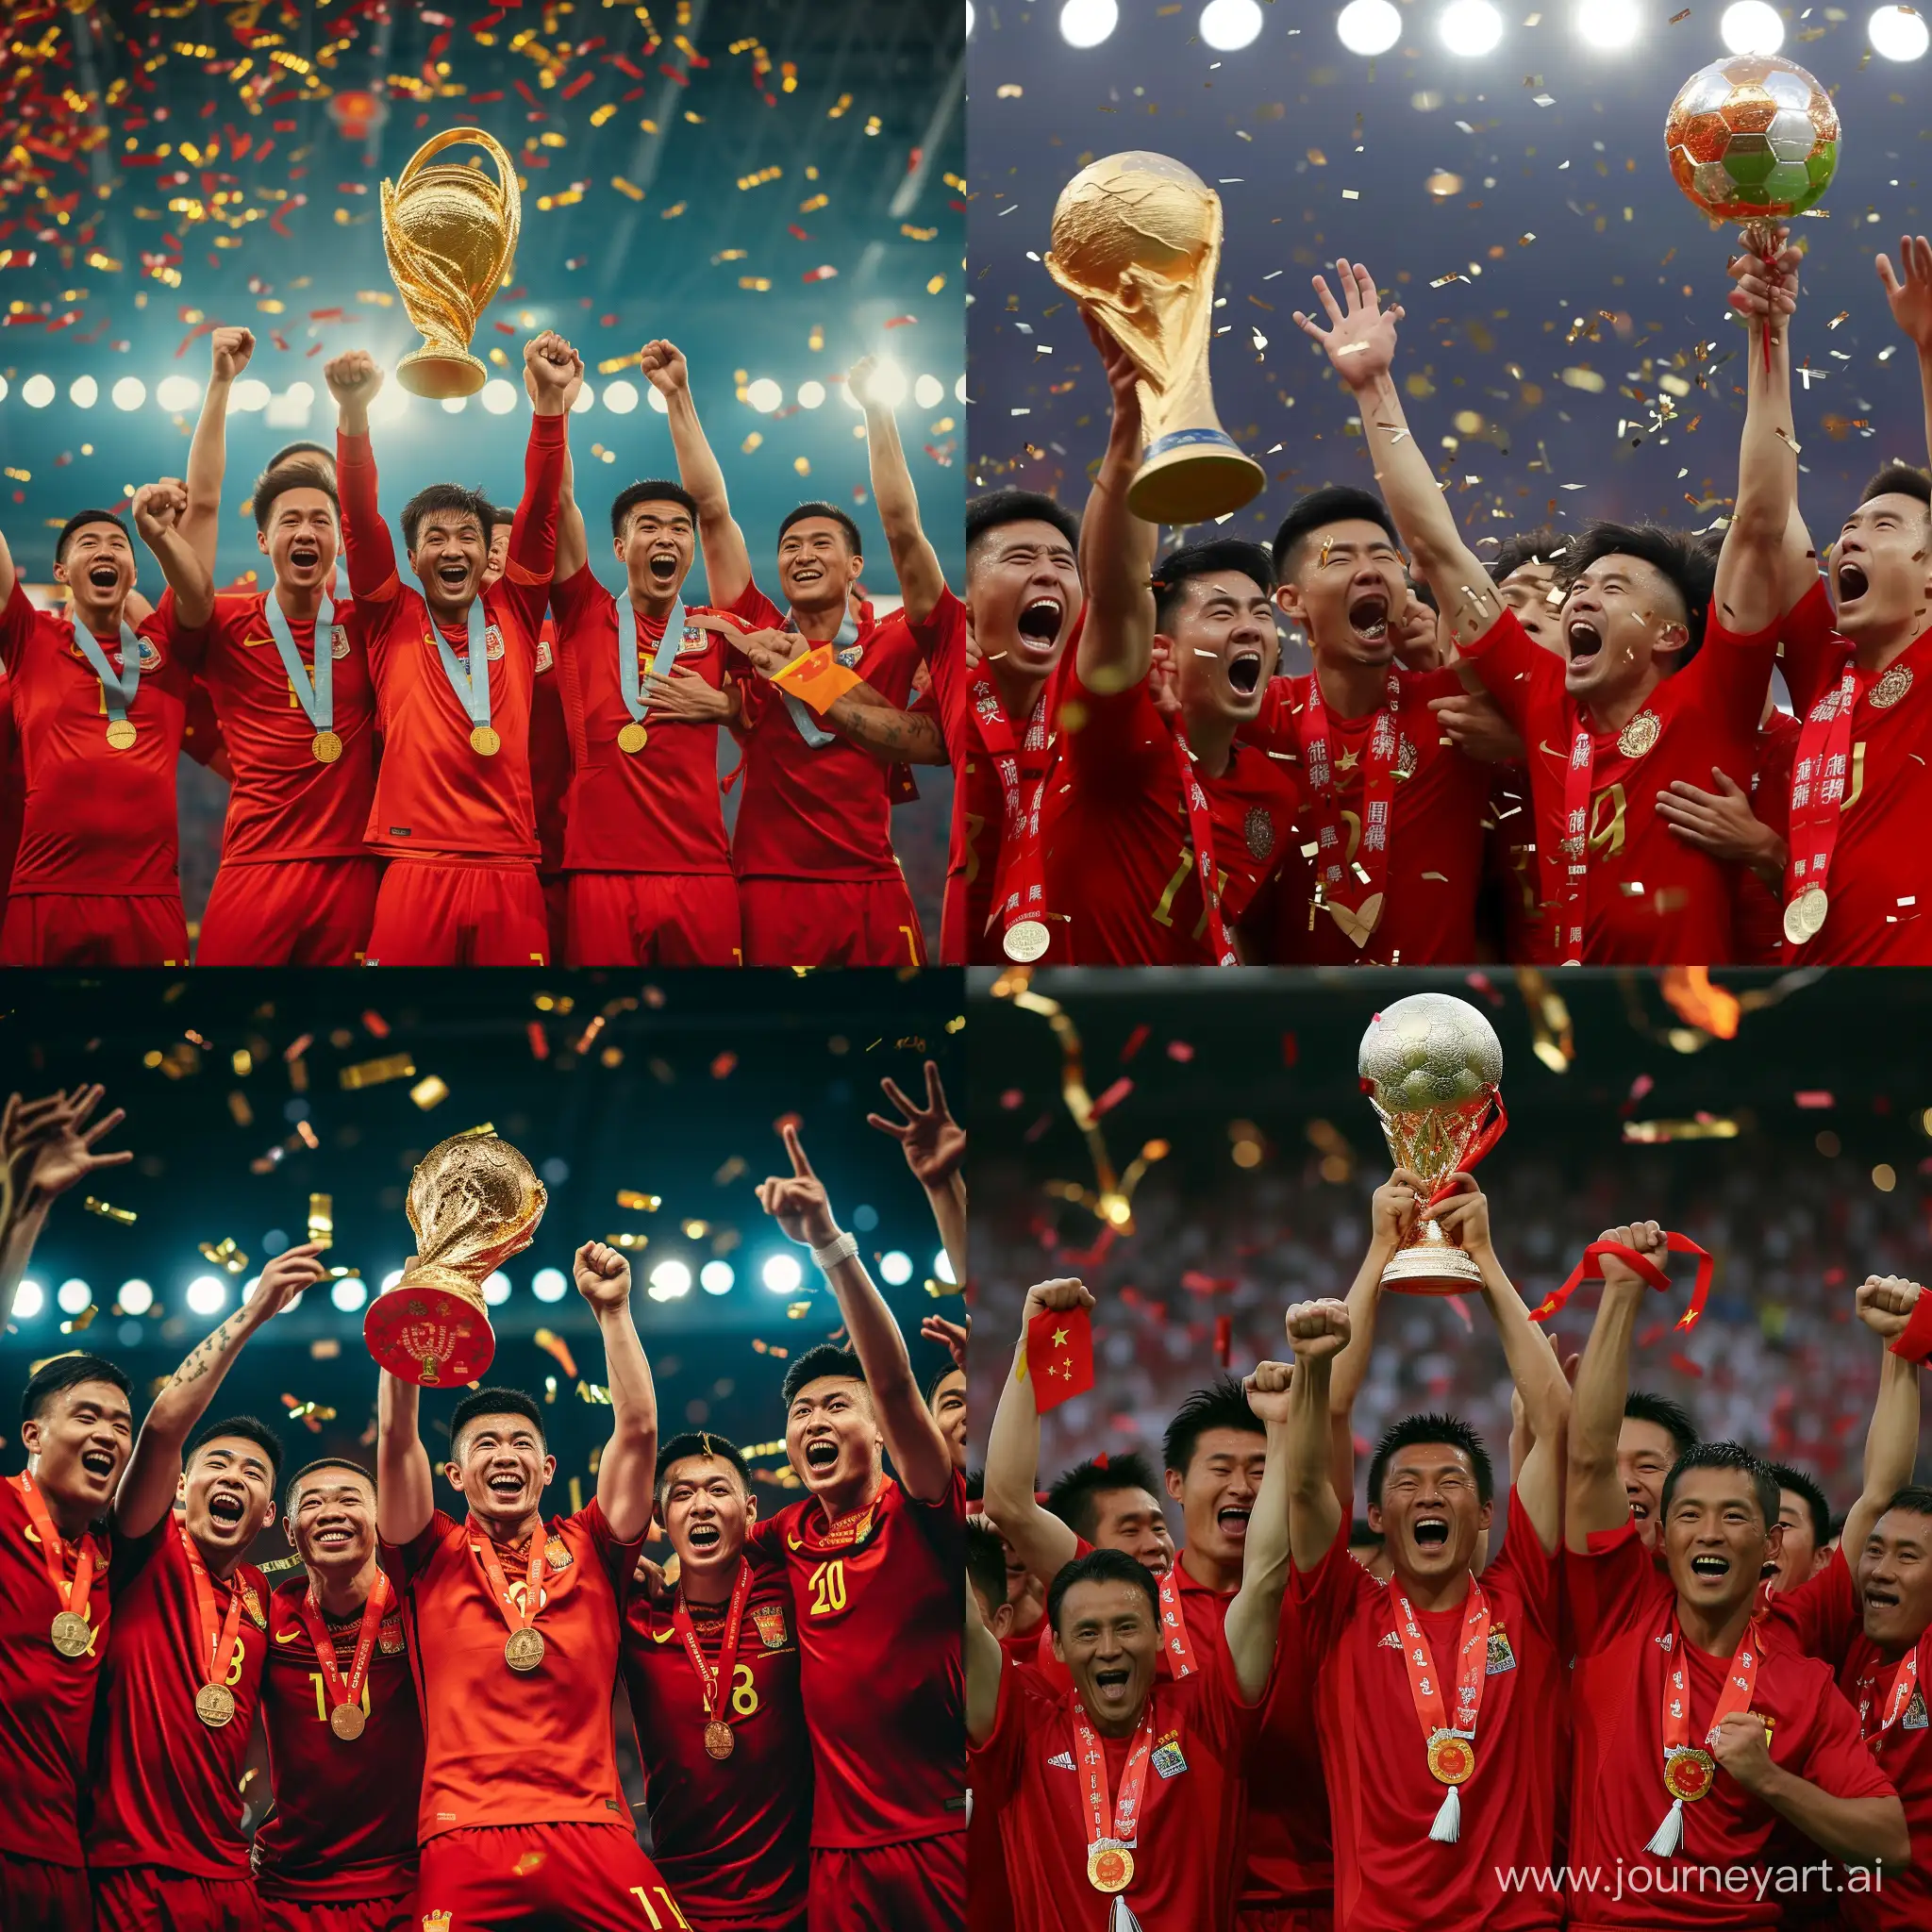 请生成一张中国队勇夺世界杯的图片